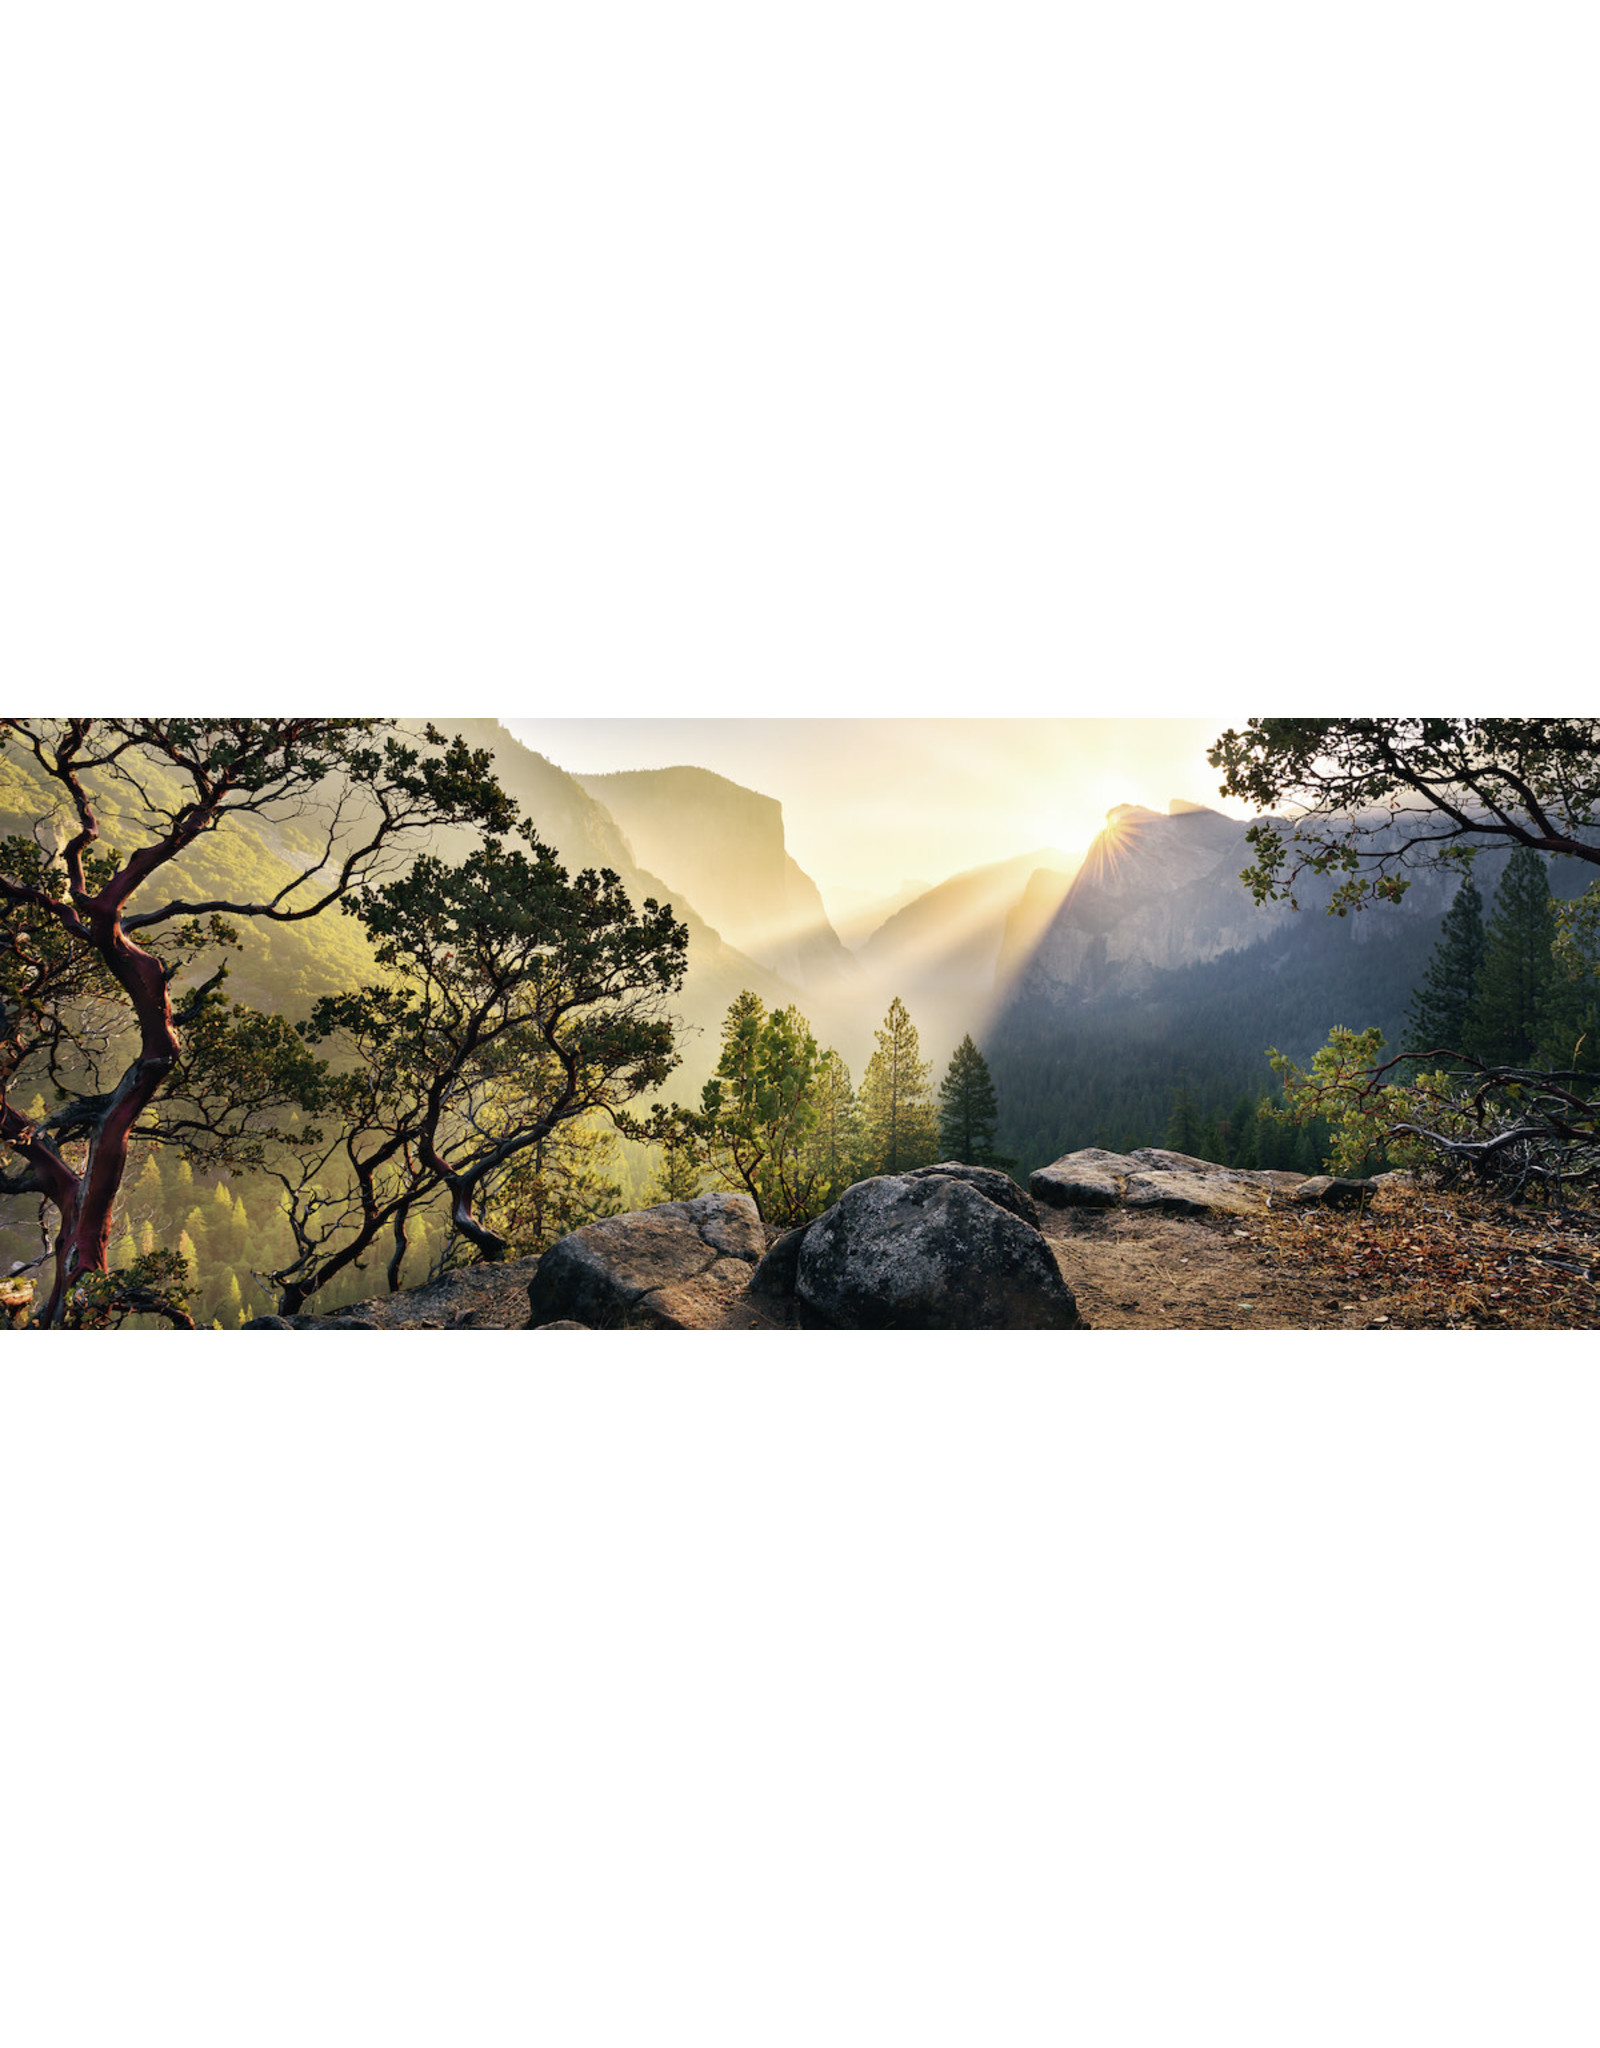 Ravensburger Ravensburger Puzzel 150830 Yosemite Park Nature Edition No 10 - 1000 stukjes